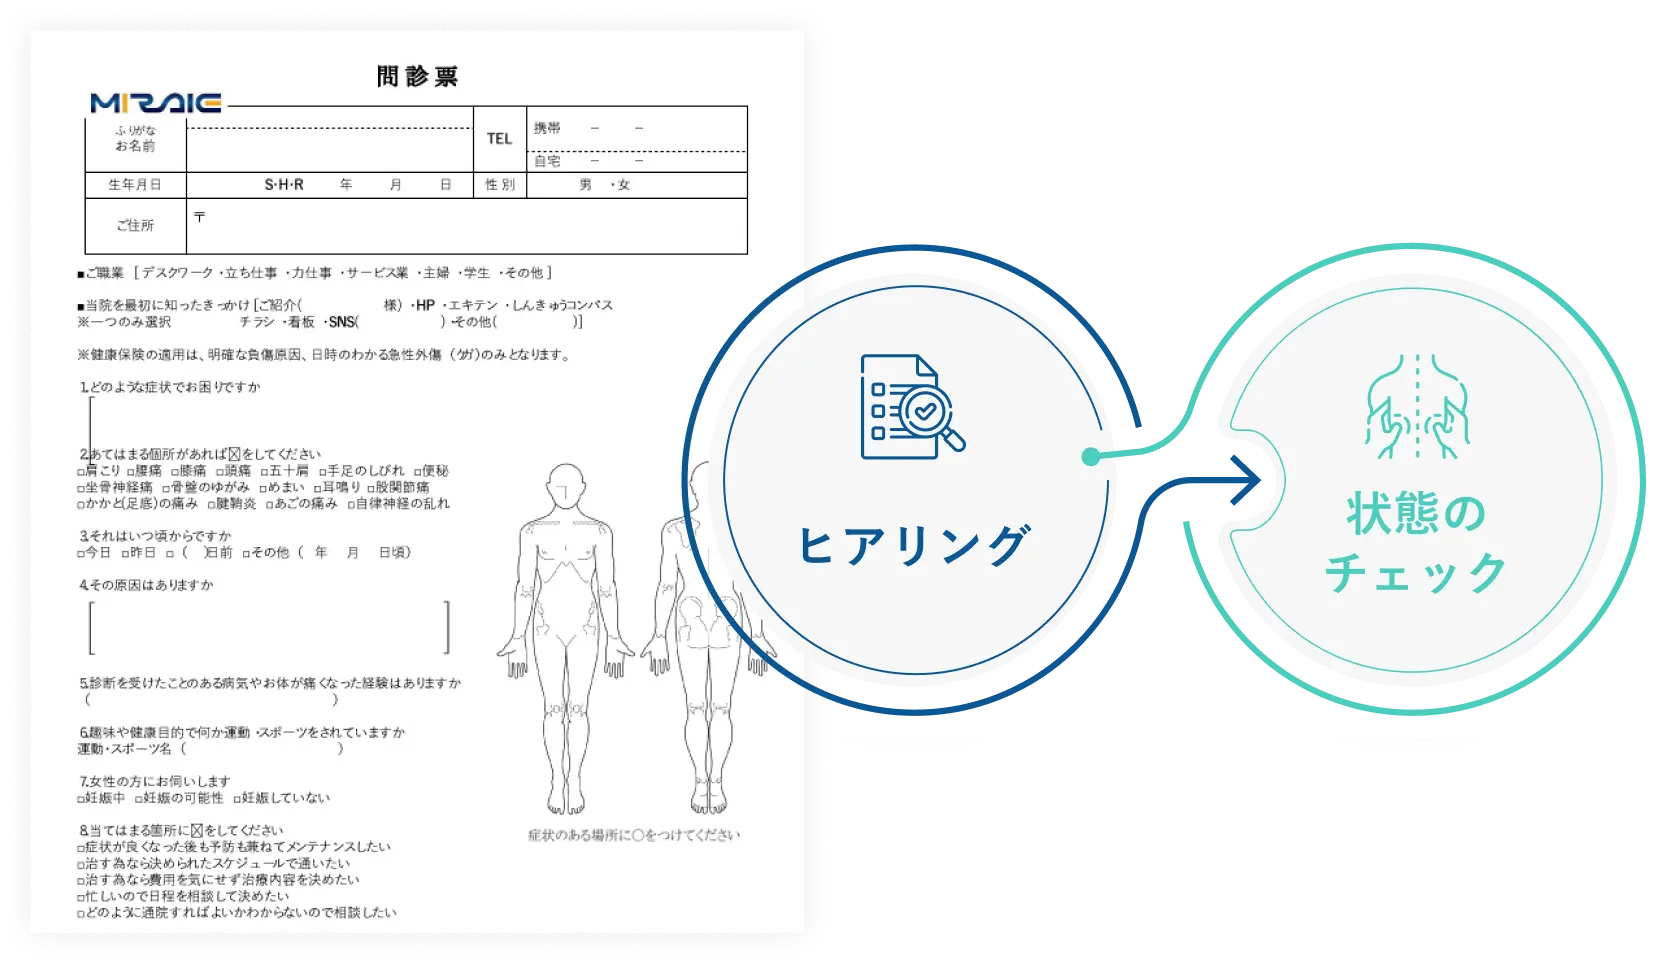 問診票の回答用紙の隣にヒアリングを通して体の状態をチェックするという意味の図